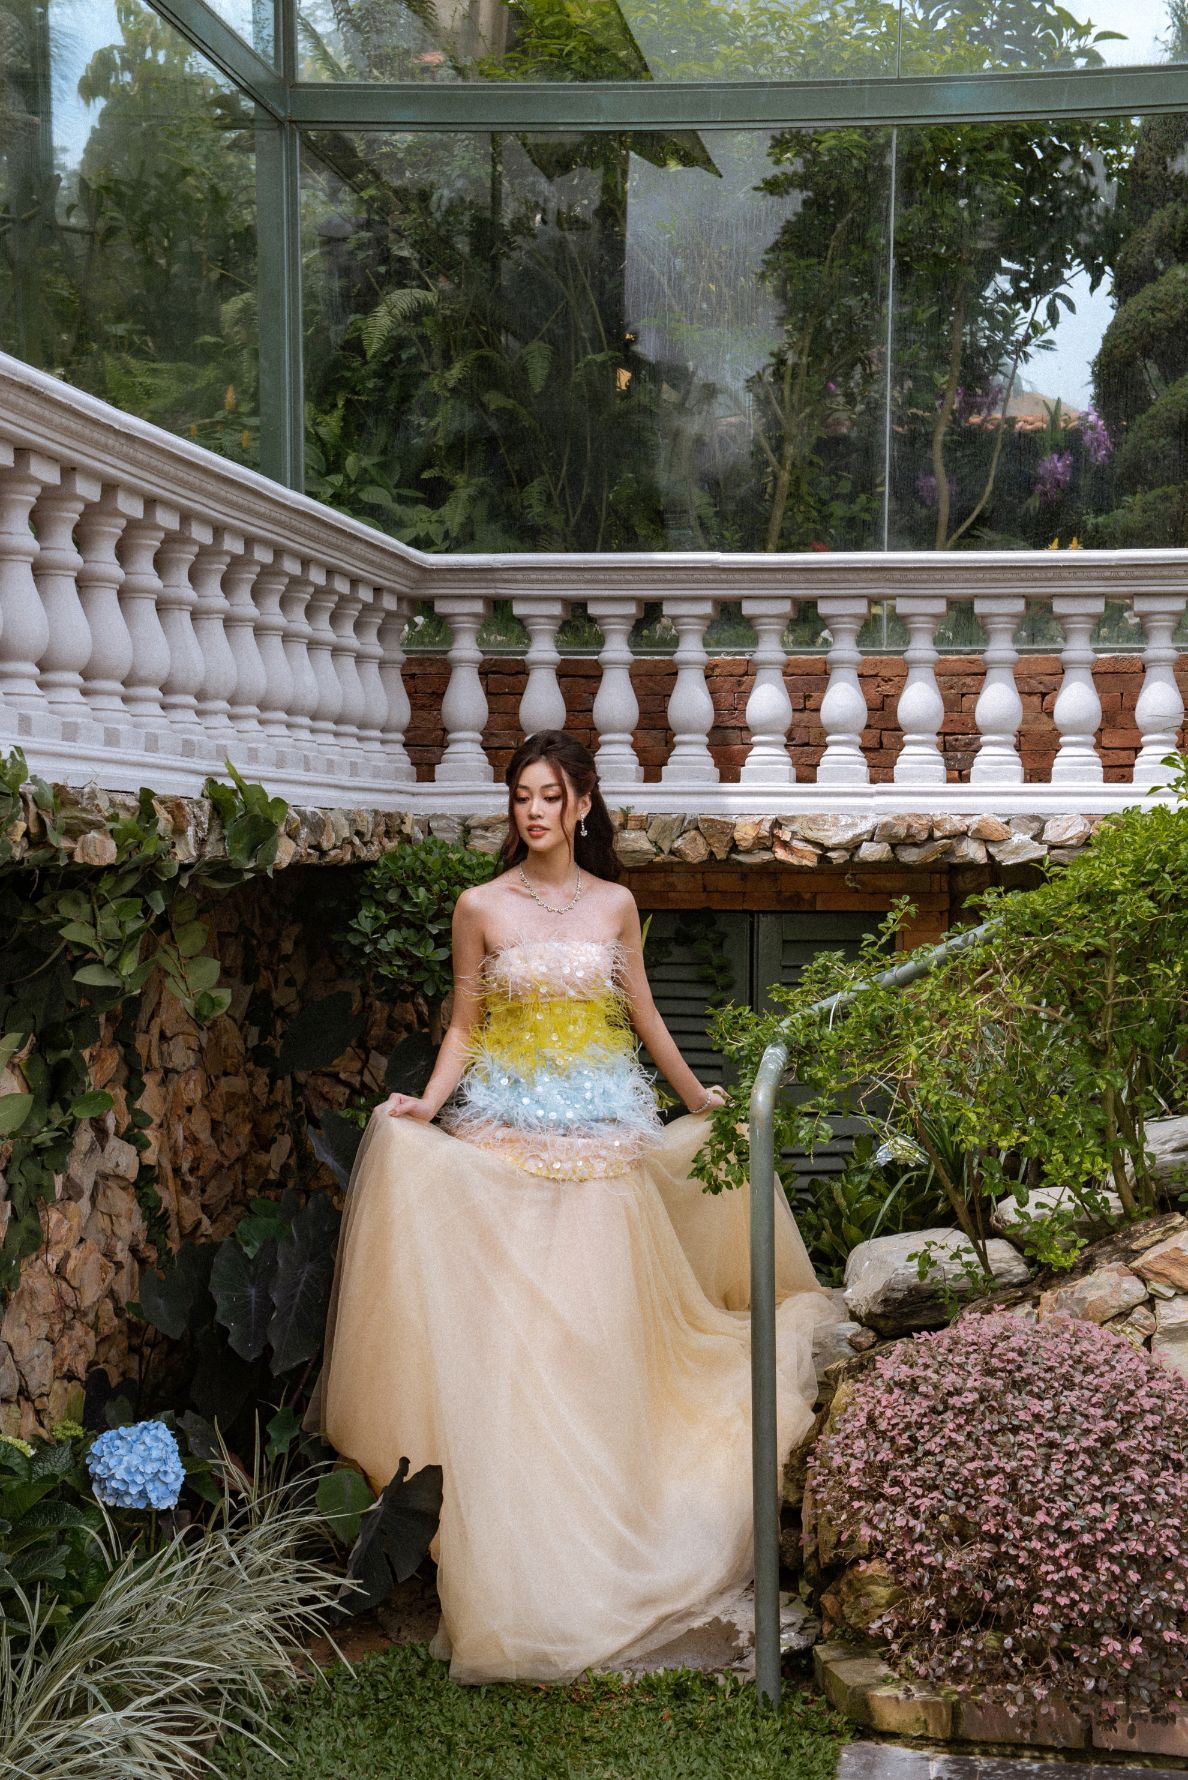 Hoa hậu Khánh Vân 5 Hoa hậu Khánh Vân ngọt ngào trong bộ ảnh mang âm hưởng cổ tích